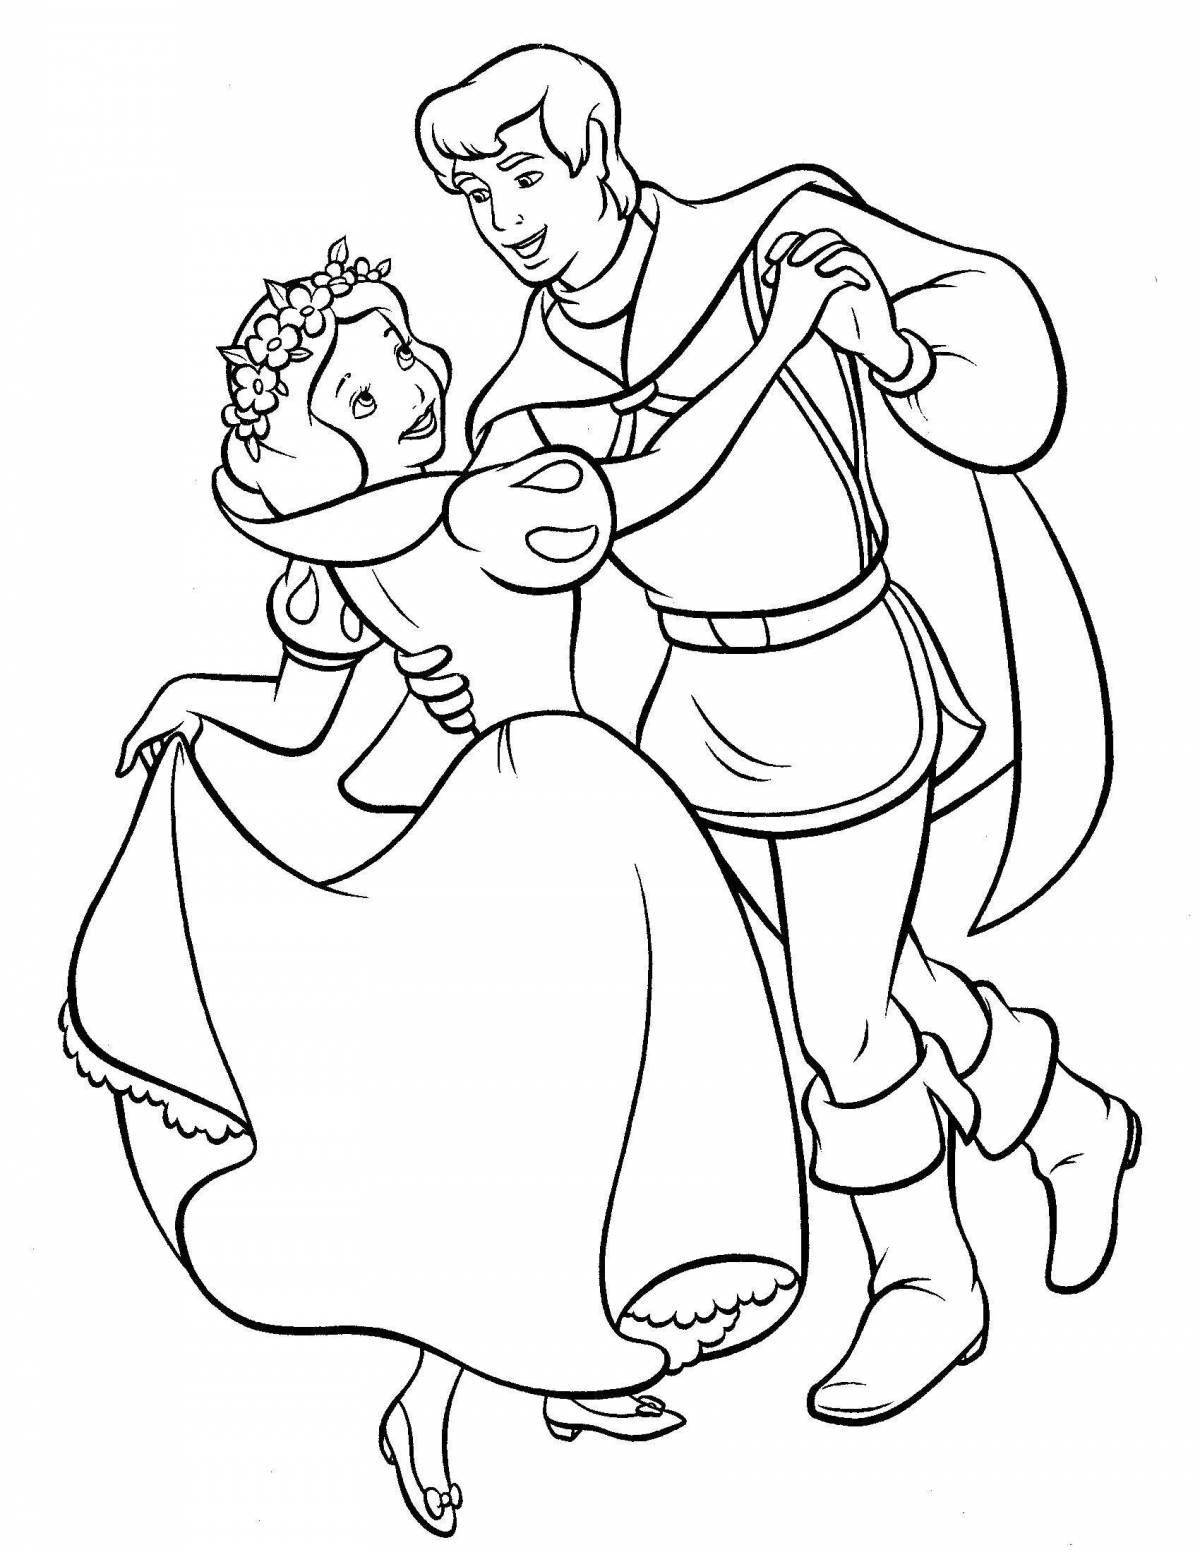 Радостная раскраска принцесса и принц для детей